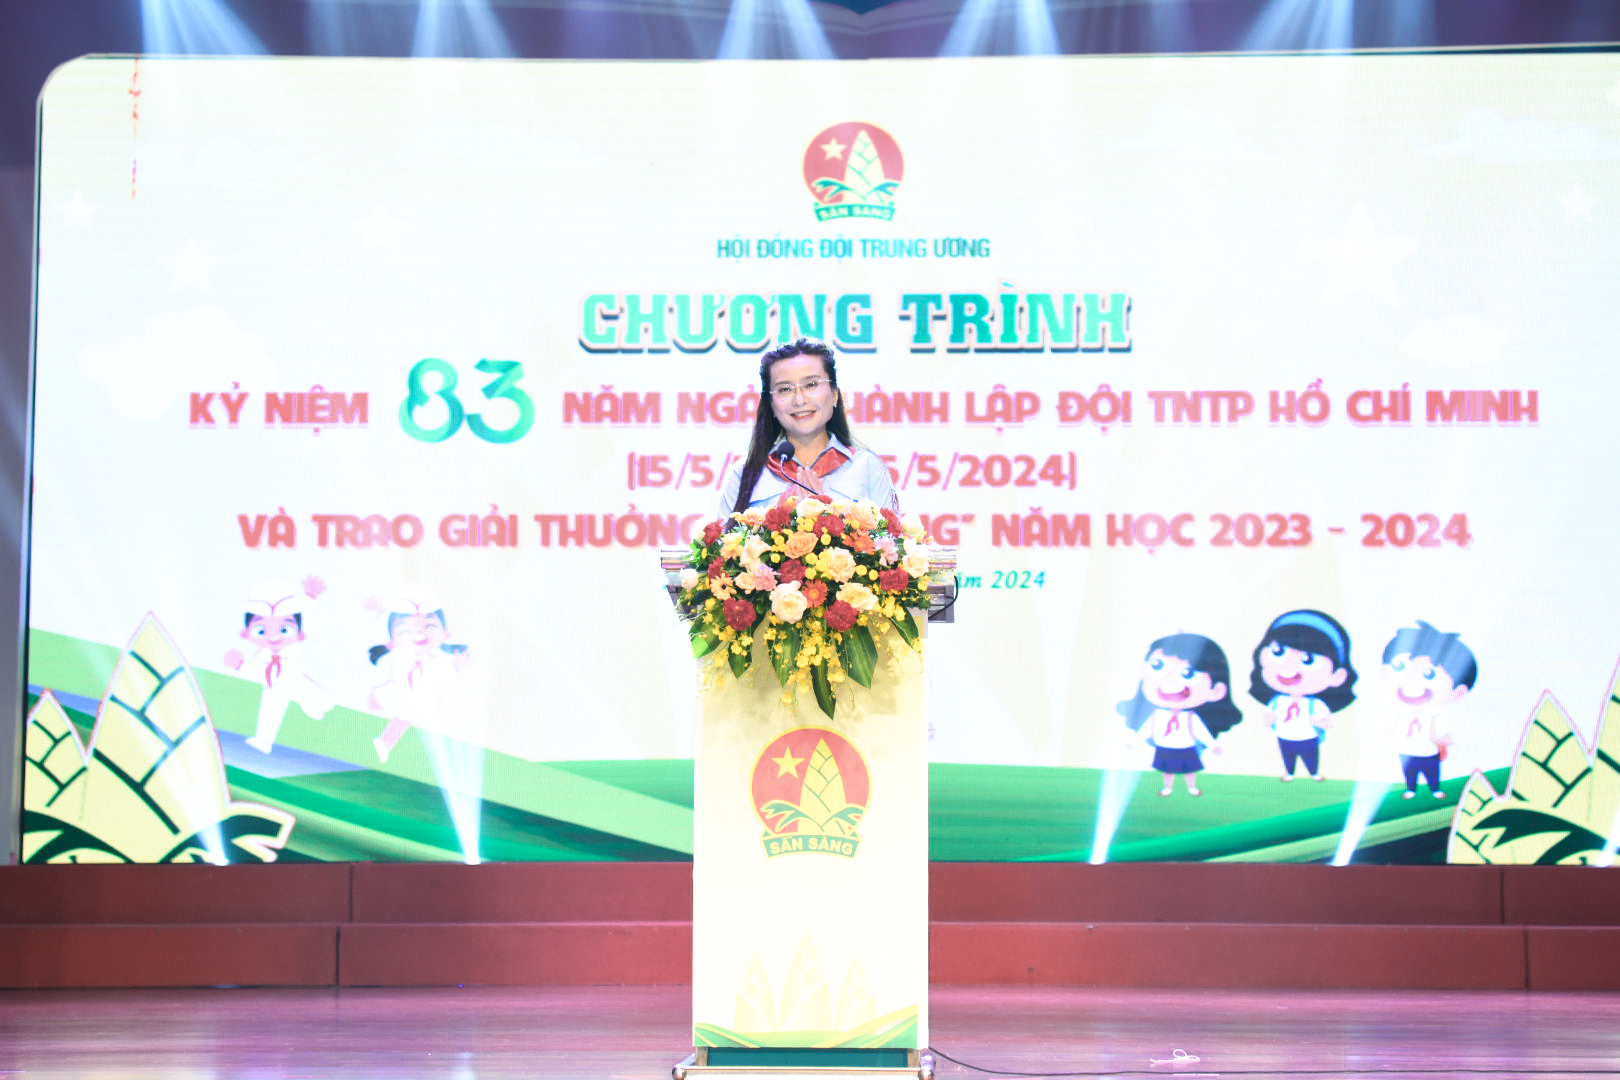 Bí thư T.Ư Đoàn, Chủ tịch Hội đồng Đội T.Ư Nguyễn Phạm Duy Trang phát biểu tại buổi lễ.